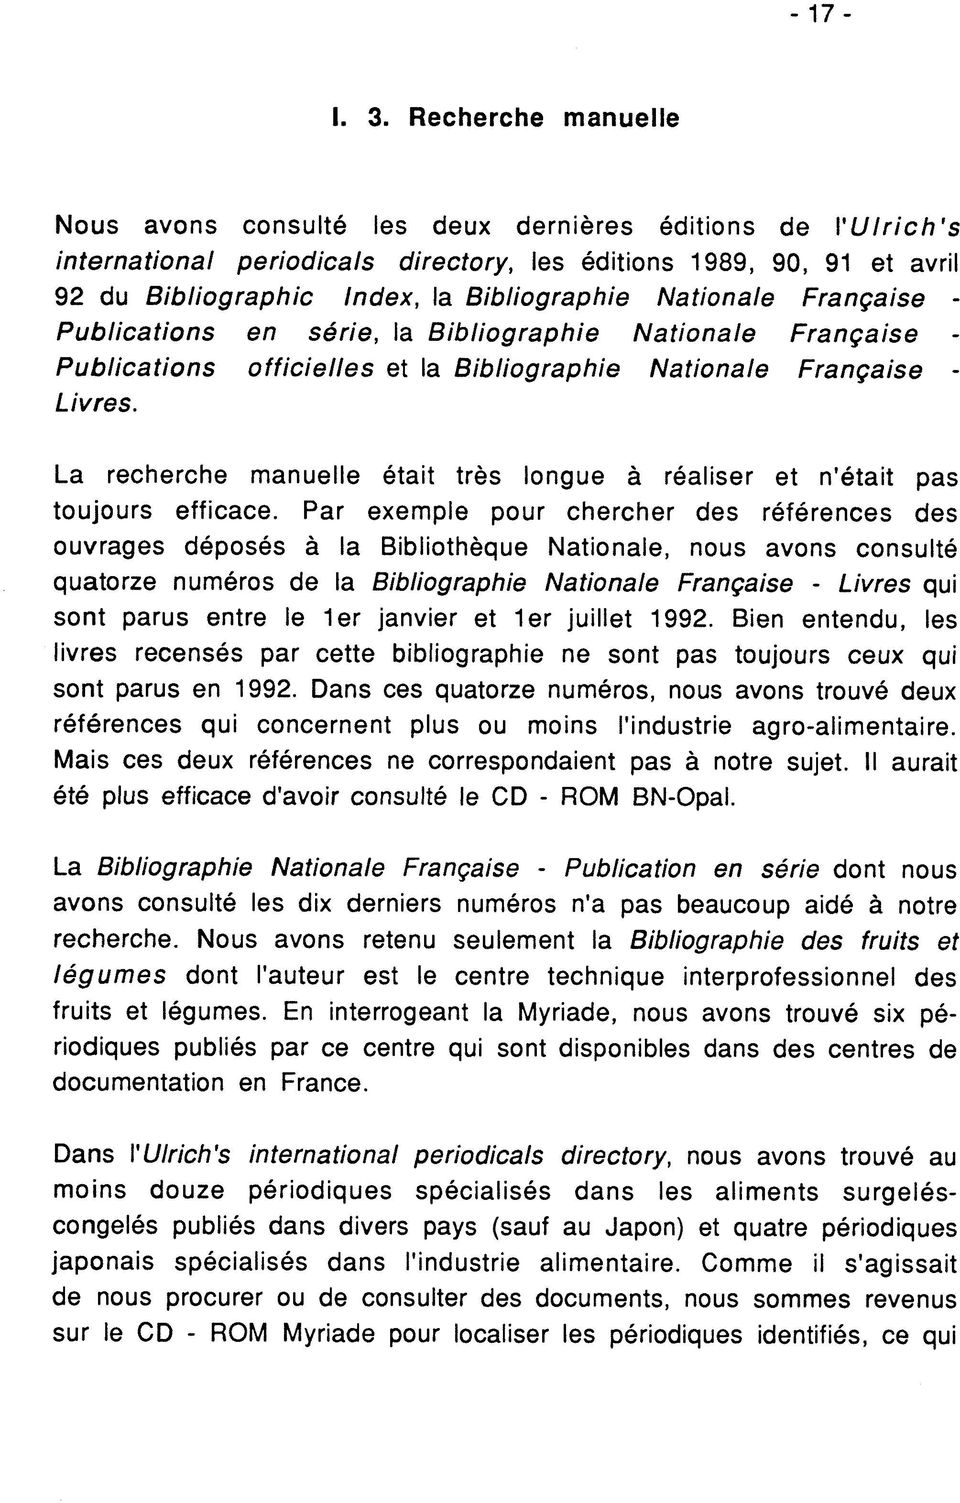 Nationale Frangaise - Publications en serie, la Bibliographie Nationale Frangaise Publications officielles et la Bibliographie Nationale Frangaise - Livres.